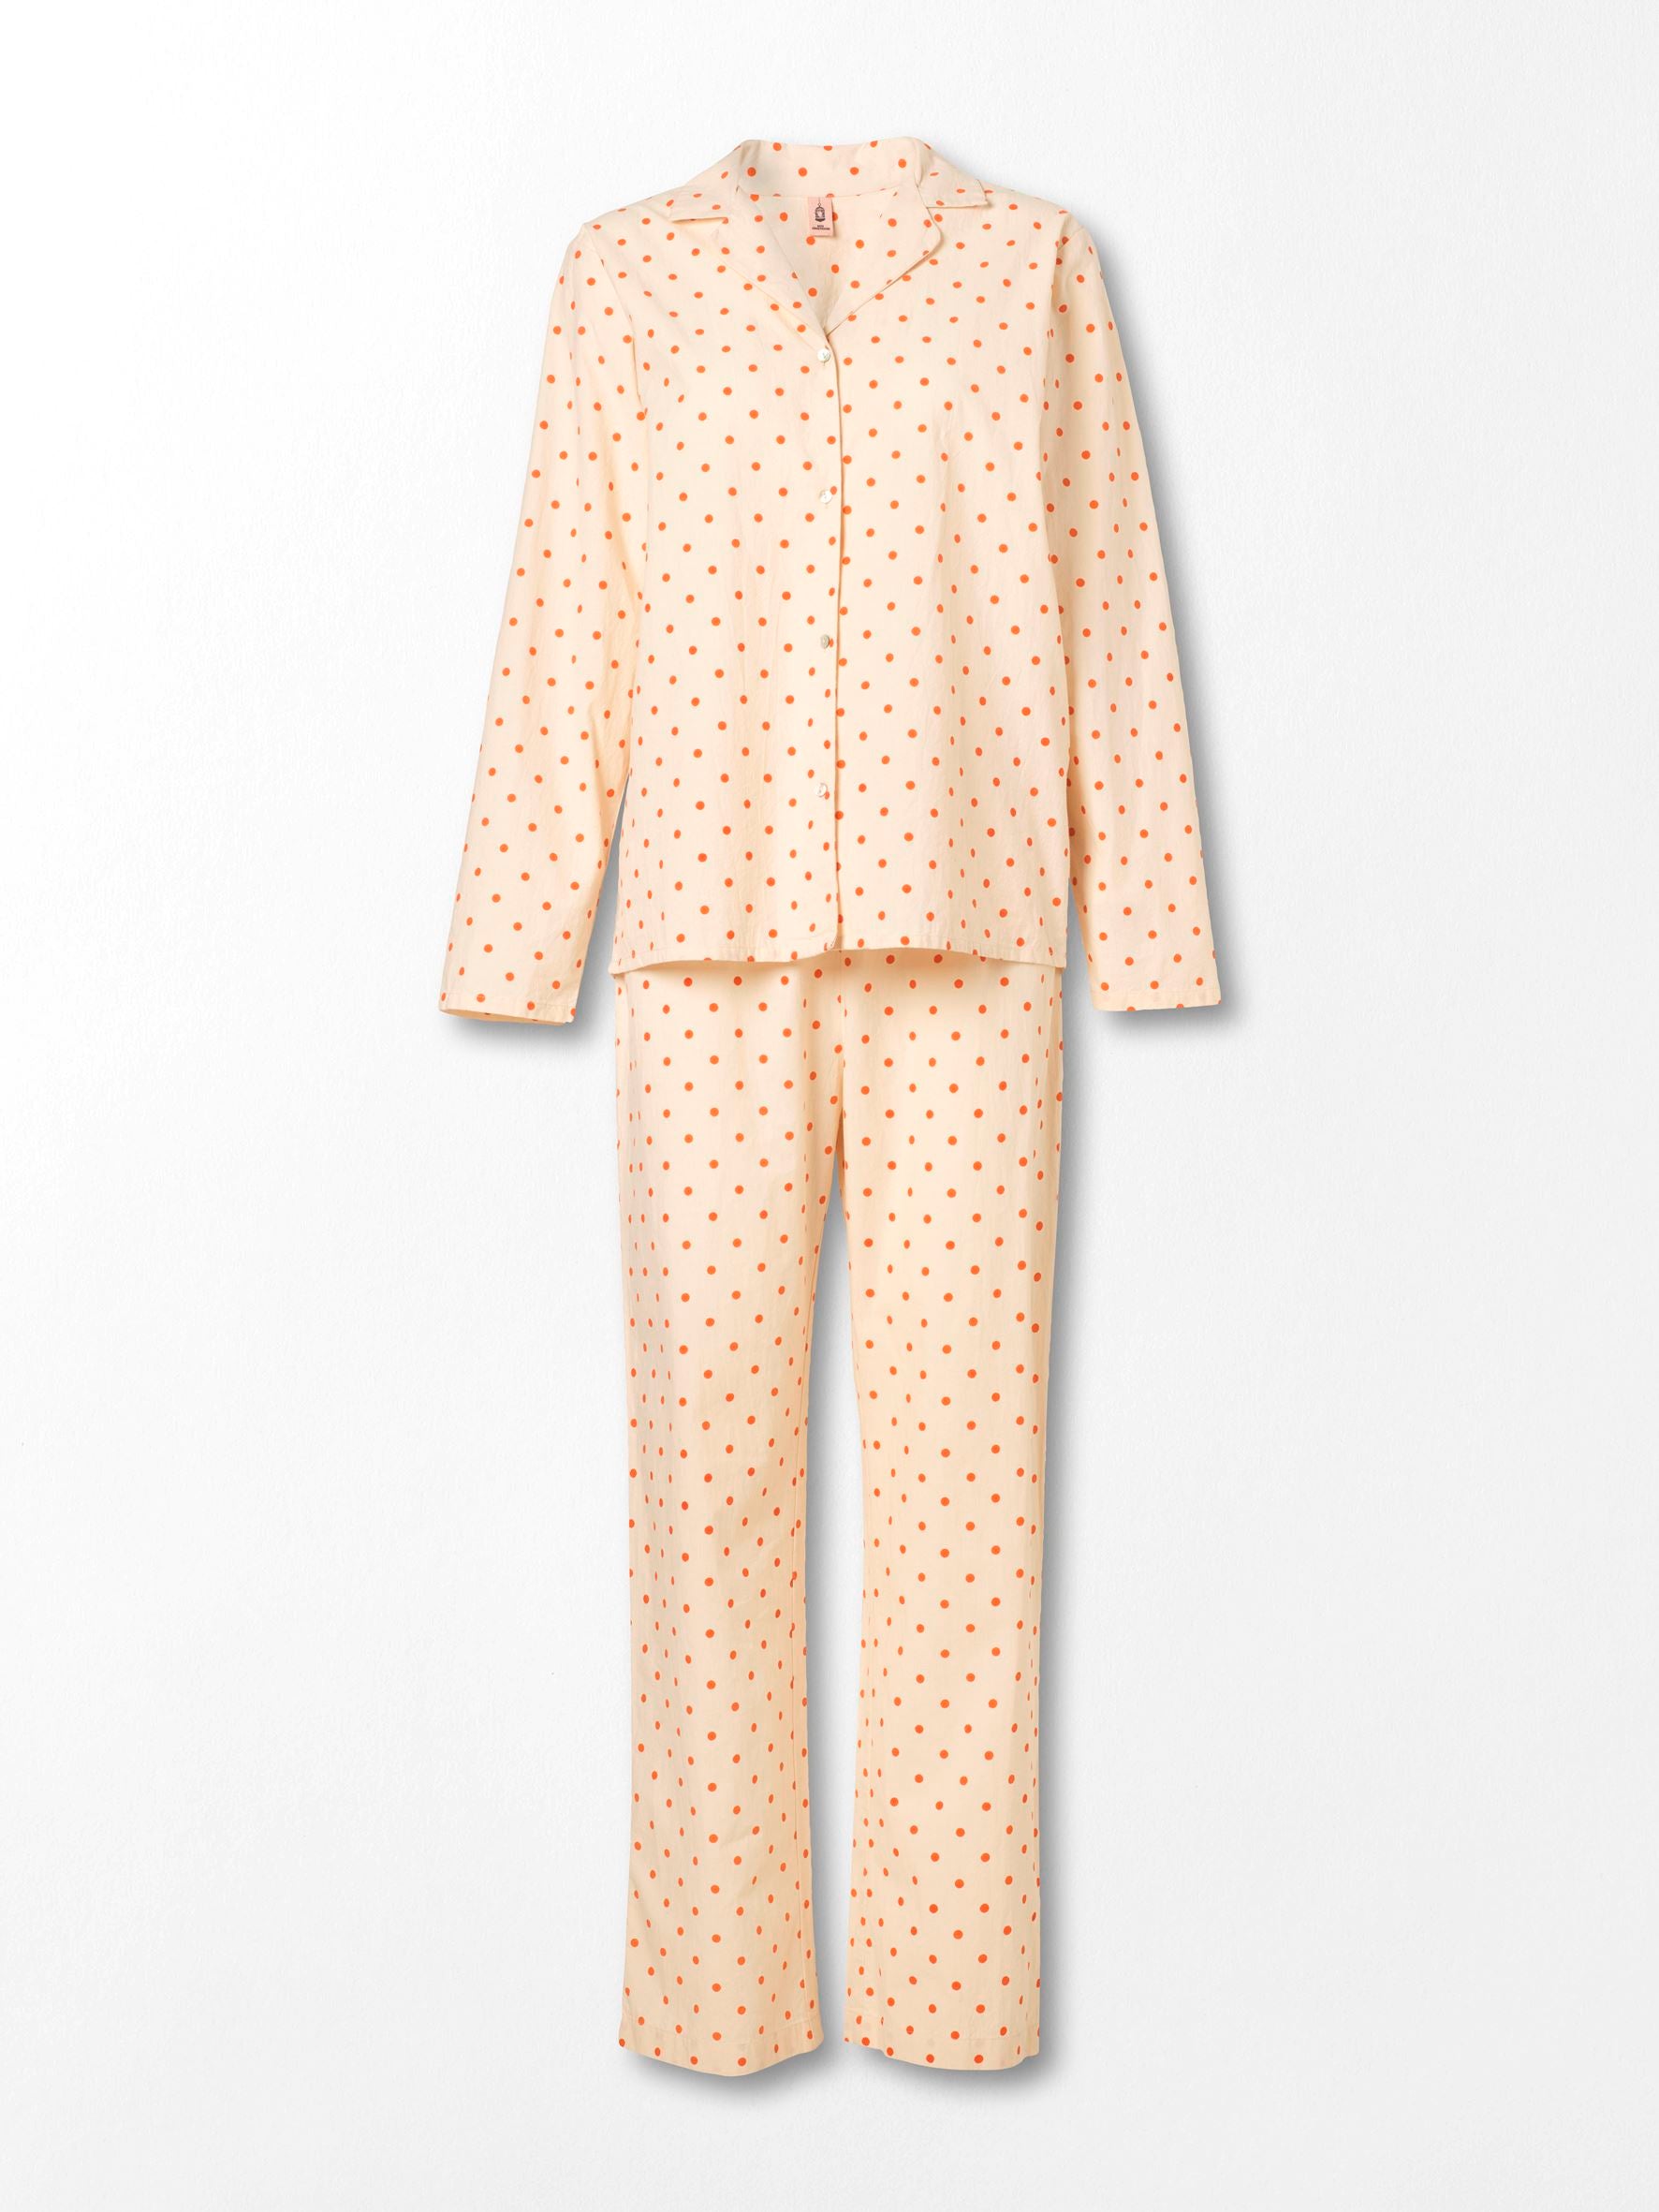 Dot Pyjamas Set - Orange Clothing Becksöndergaard.dk   